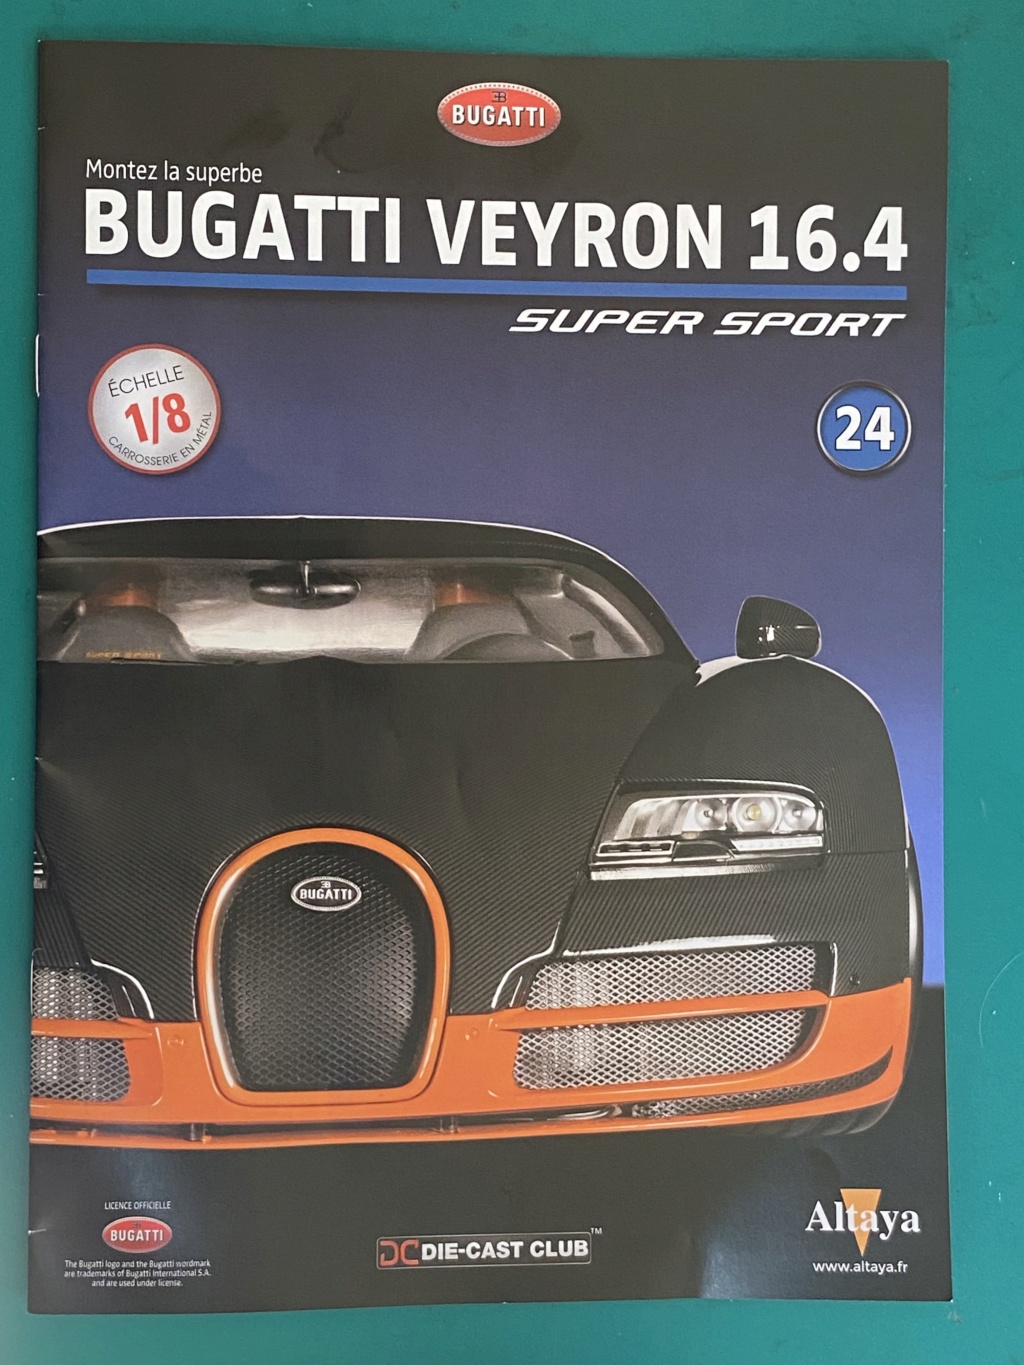 Bugatti Veyron [Altaya 1/8°] de Grenouille1954 - Page 2 A805b210